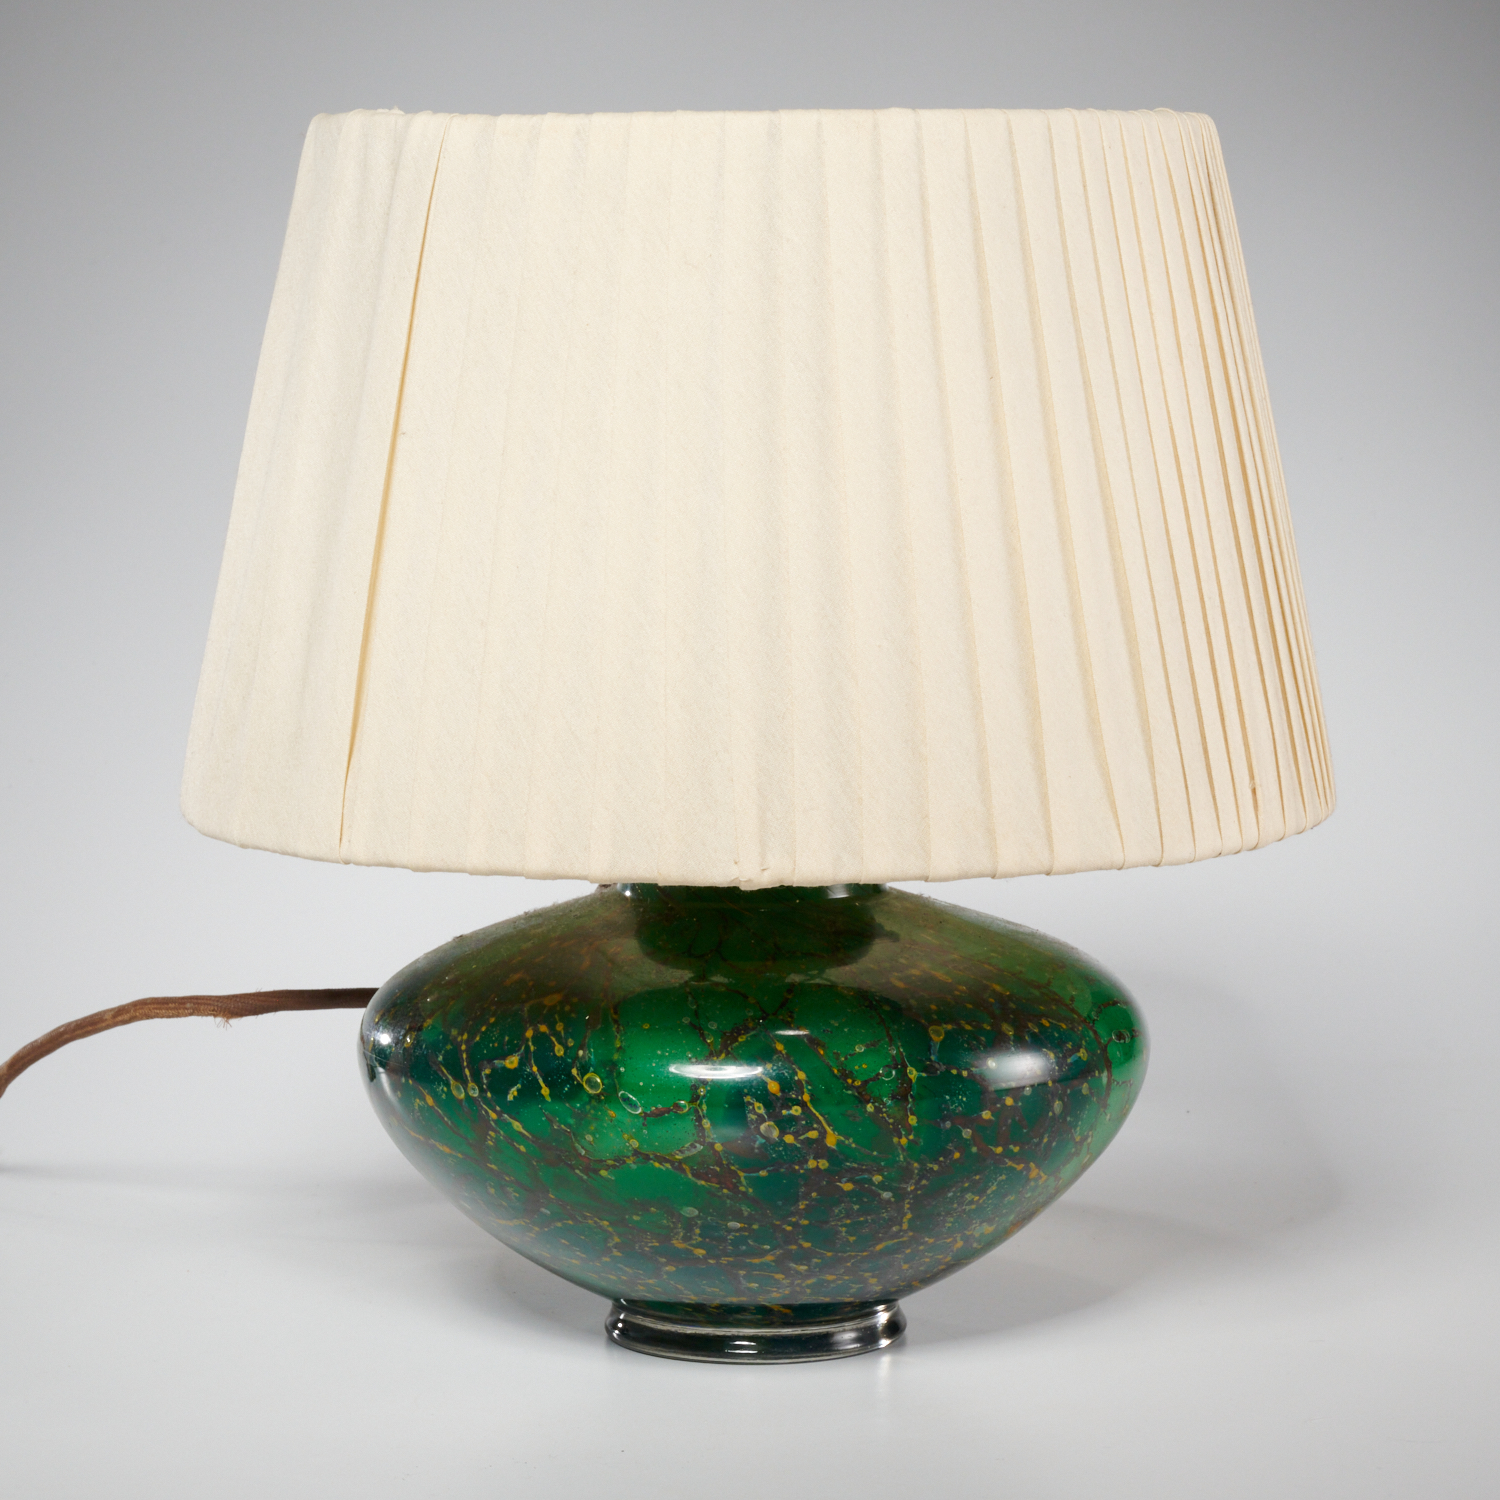 WMF IKORA GLASS LAMP c 1950s  36096e